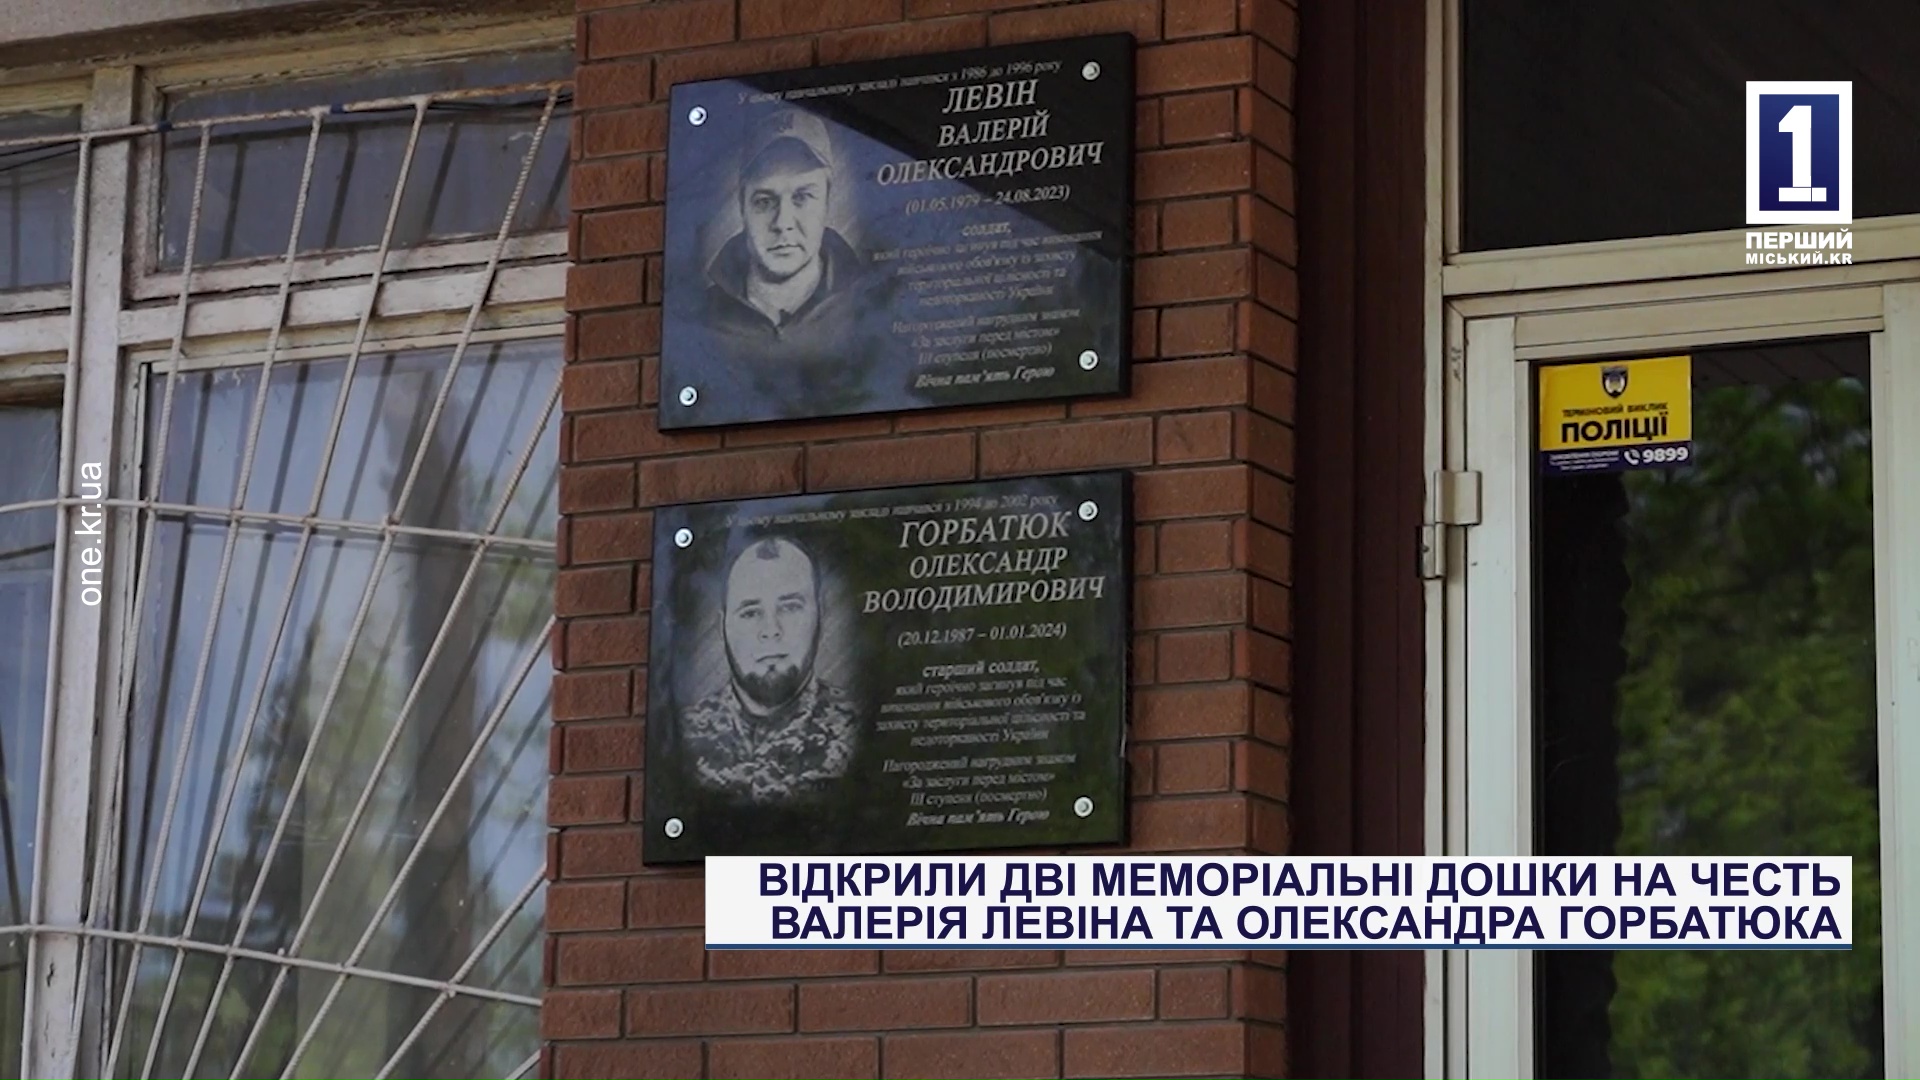 Открыли две мемориальные доски в честь Валерия Левина и Александра Горбатюка